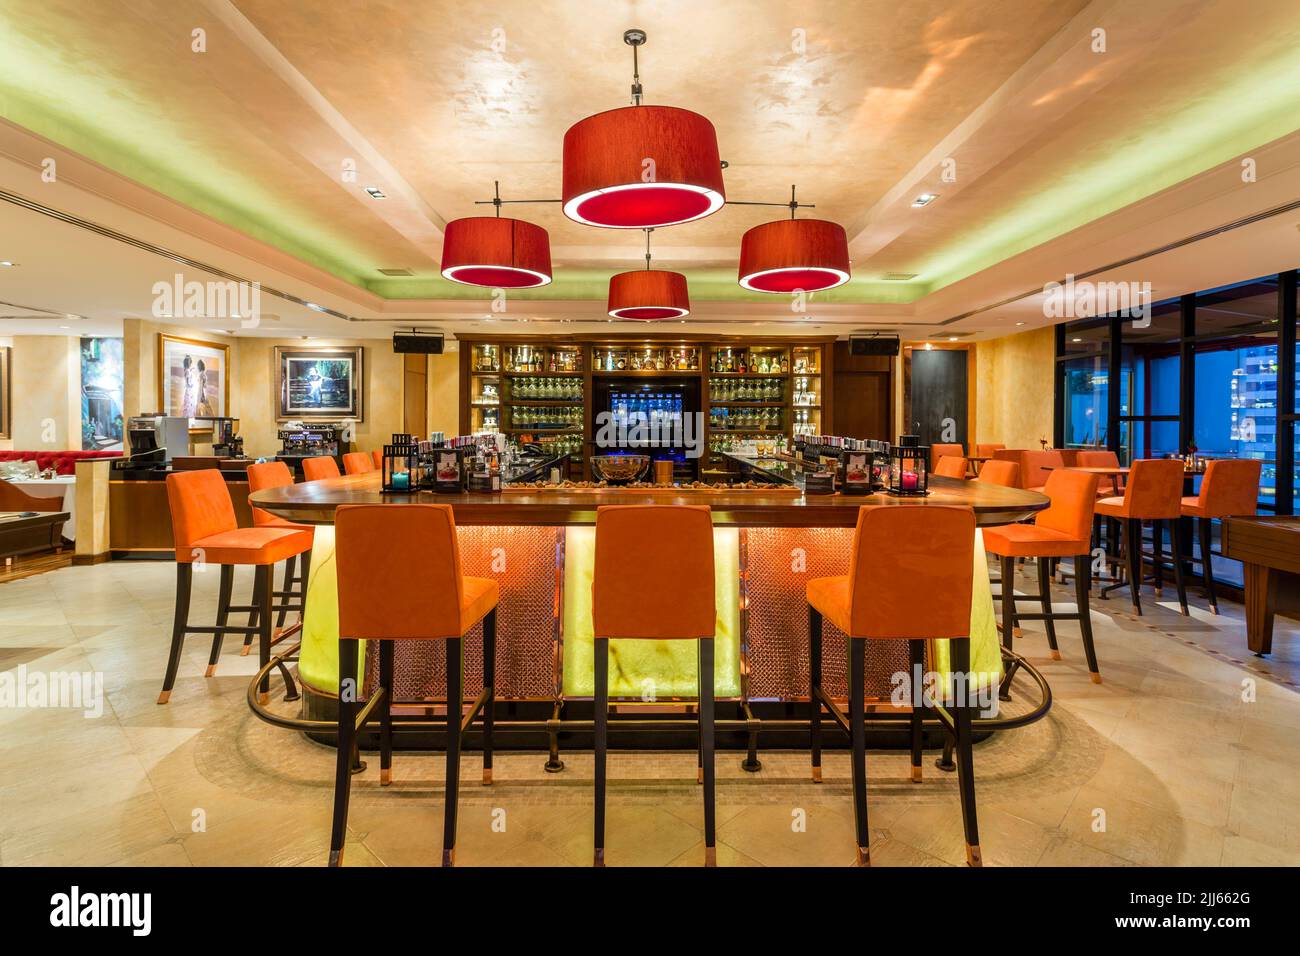 13 de enero de 2017 Interior del restaurante y bistro Aldo's ubicado en Bangkok, Tailandia. Foto de stock